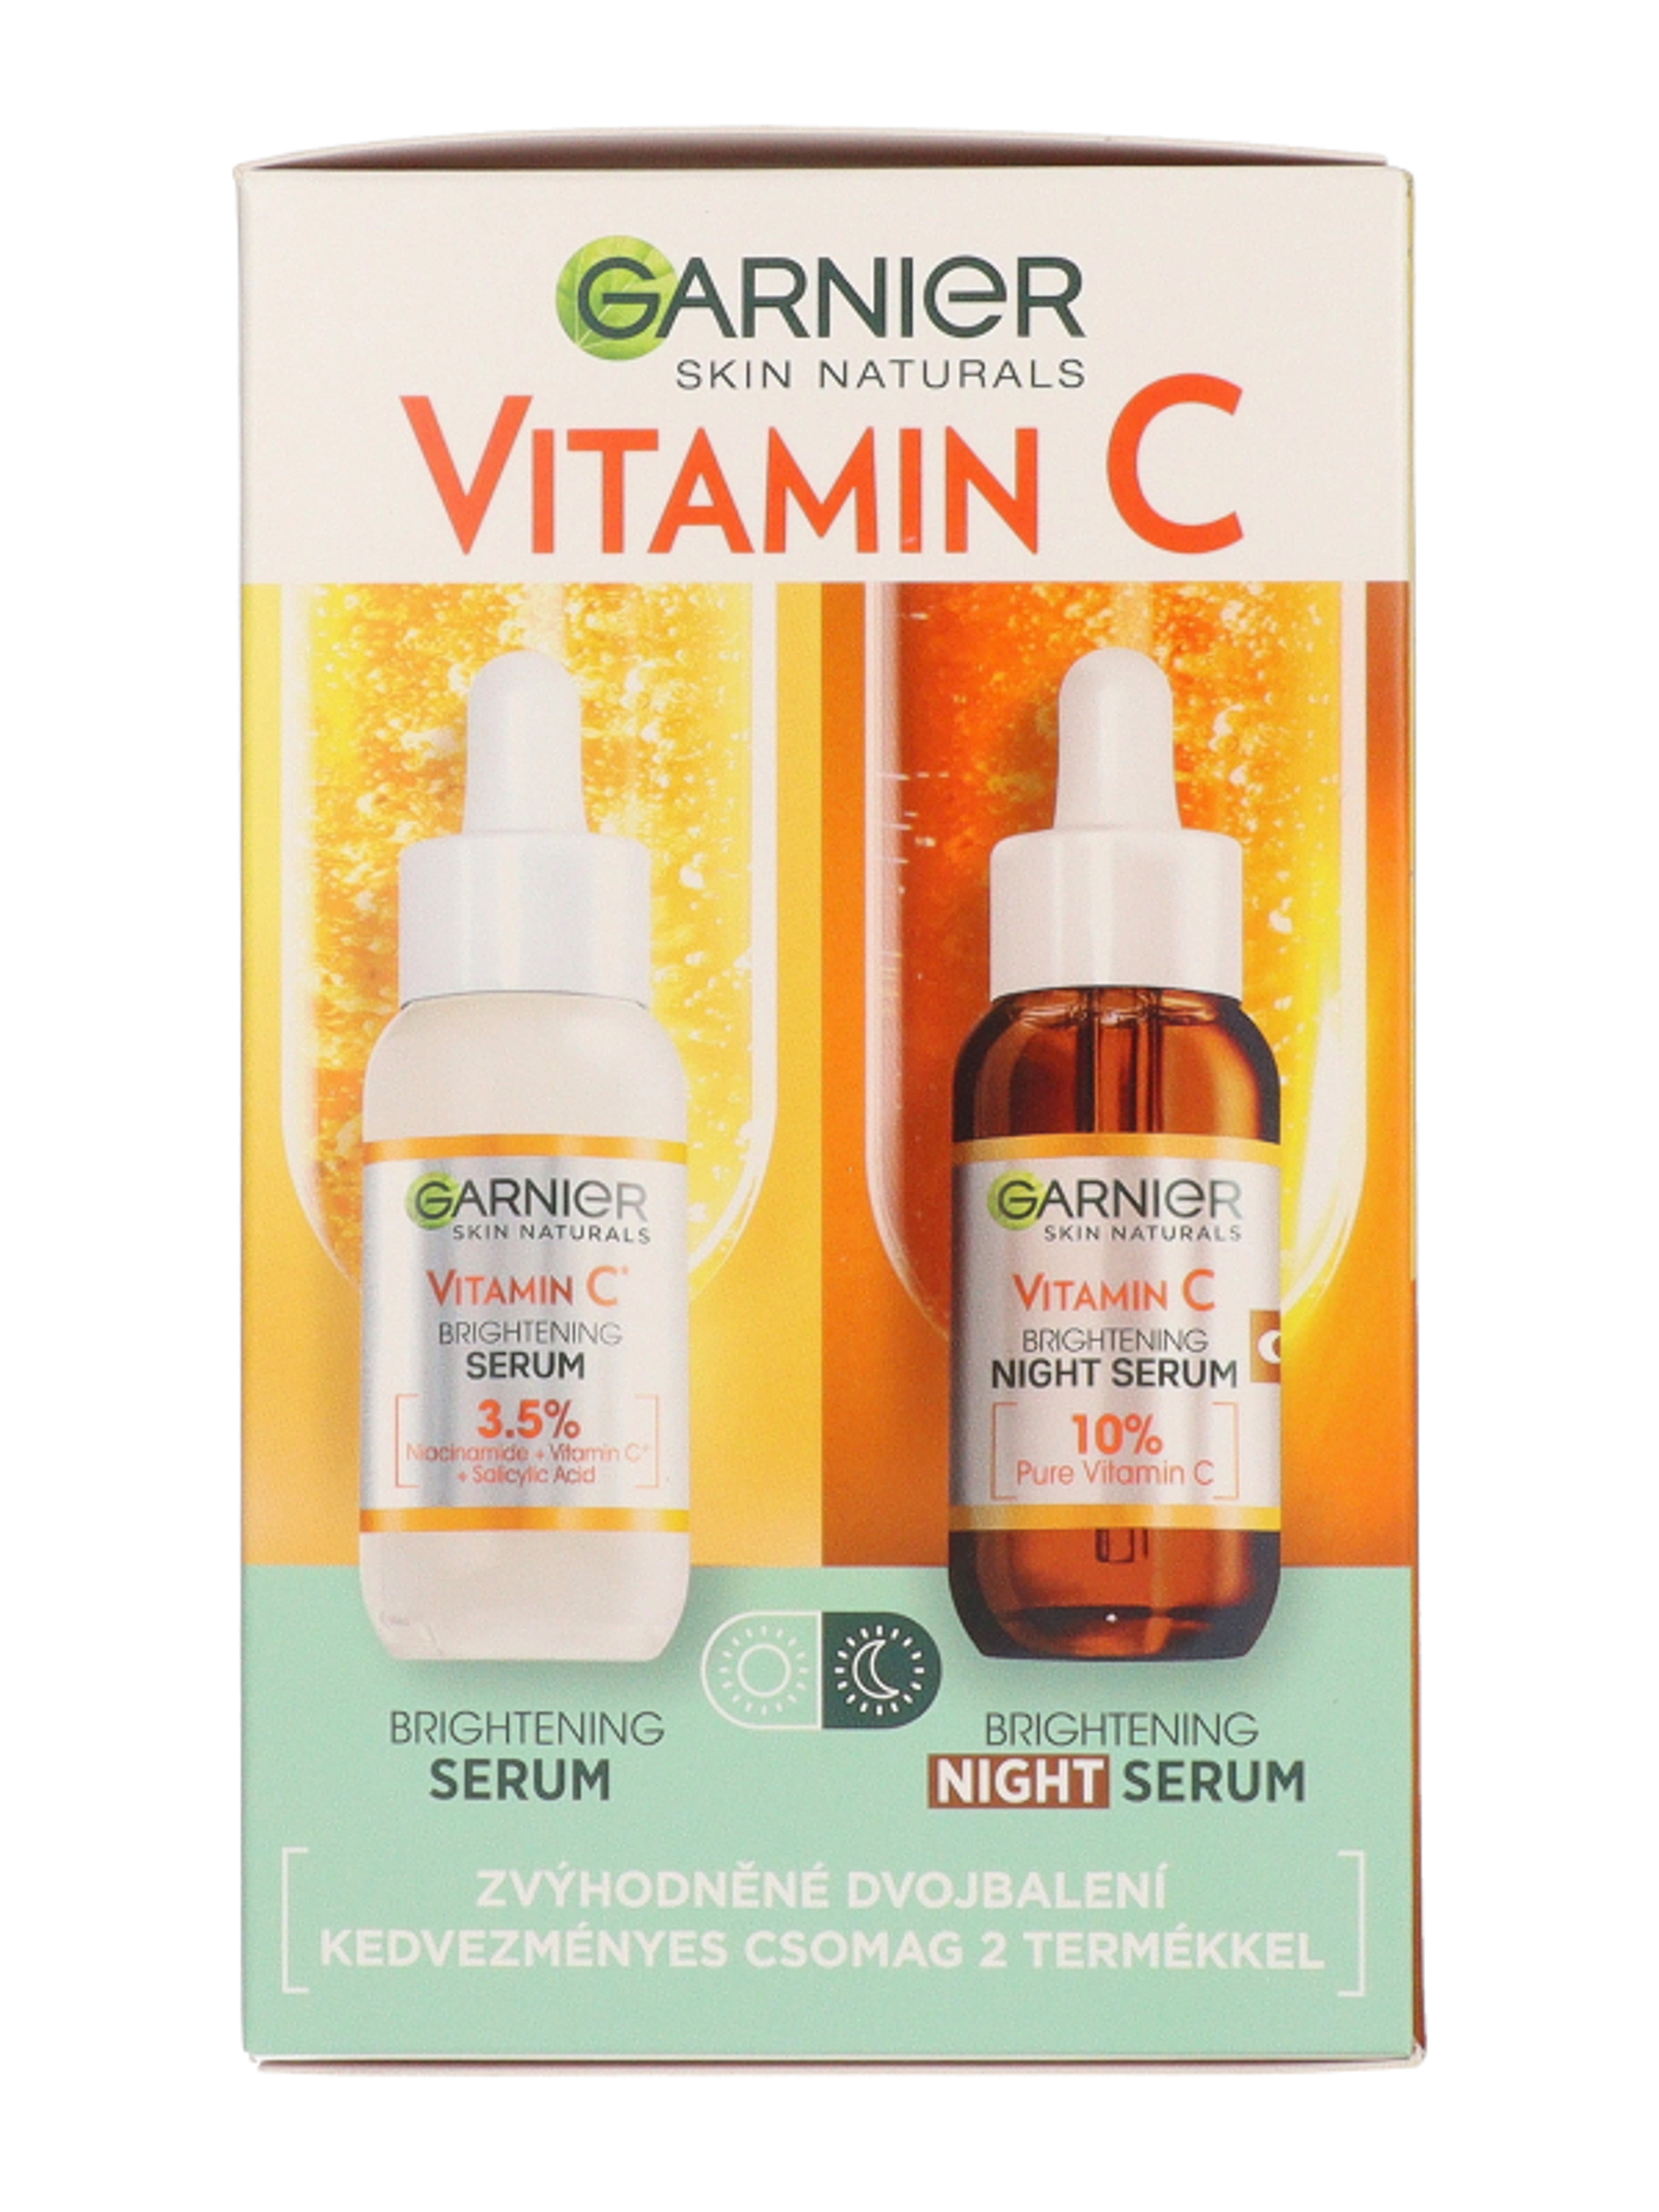 Garnier Skin Naturals Vitamin C nappali és éjszakai szérum szett - 60 ml-2